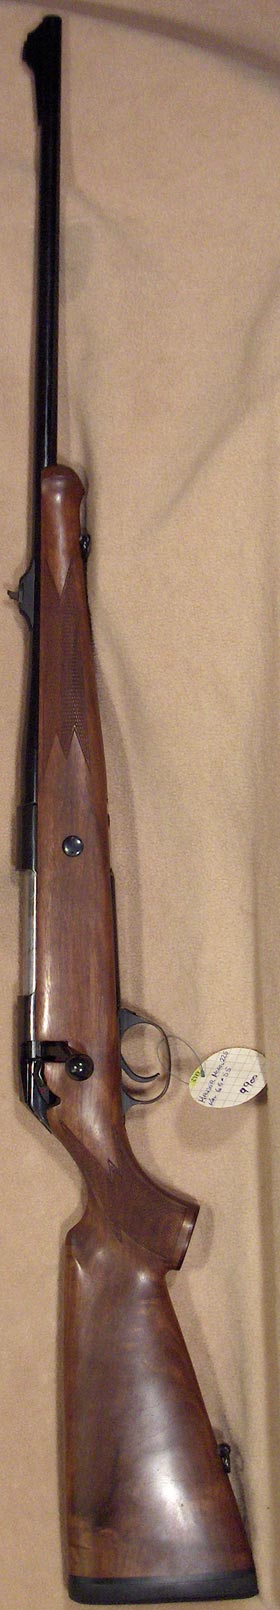 Mauser model 225